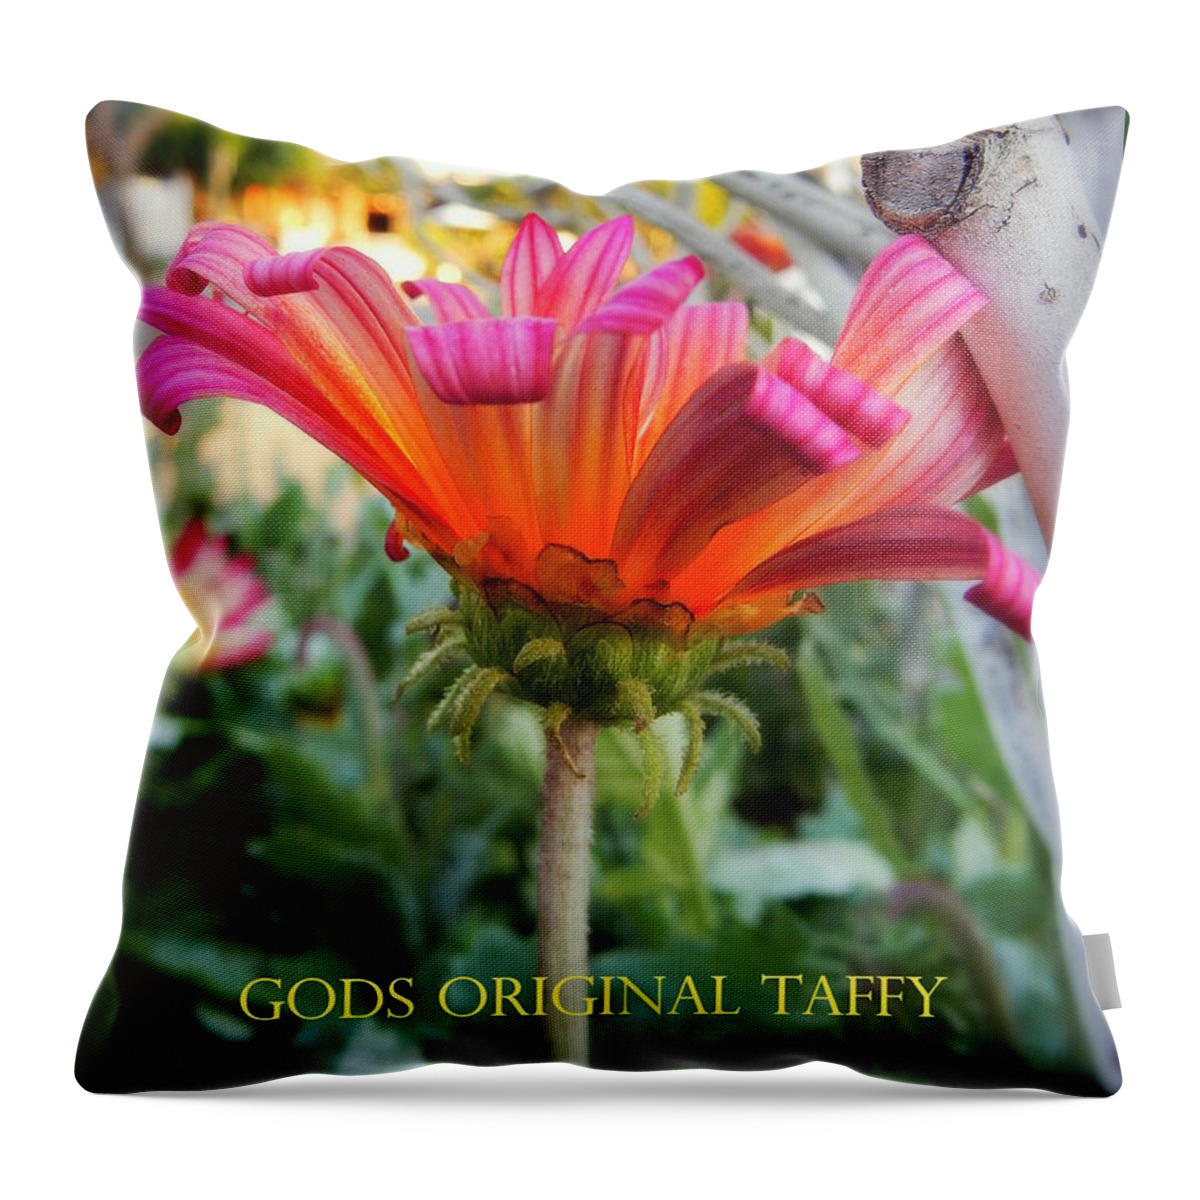 Candy Throw Pillow featuring the photograph God's original taffy by Karen Jbon Lee